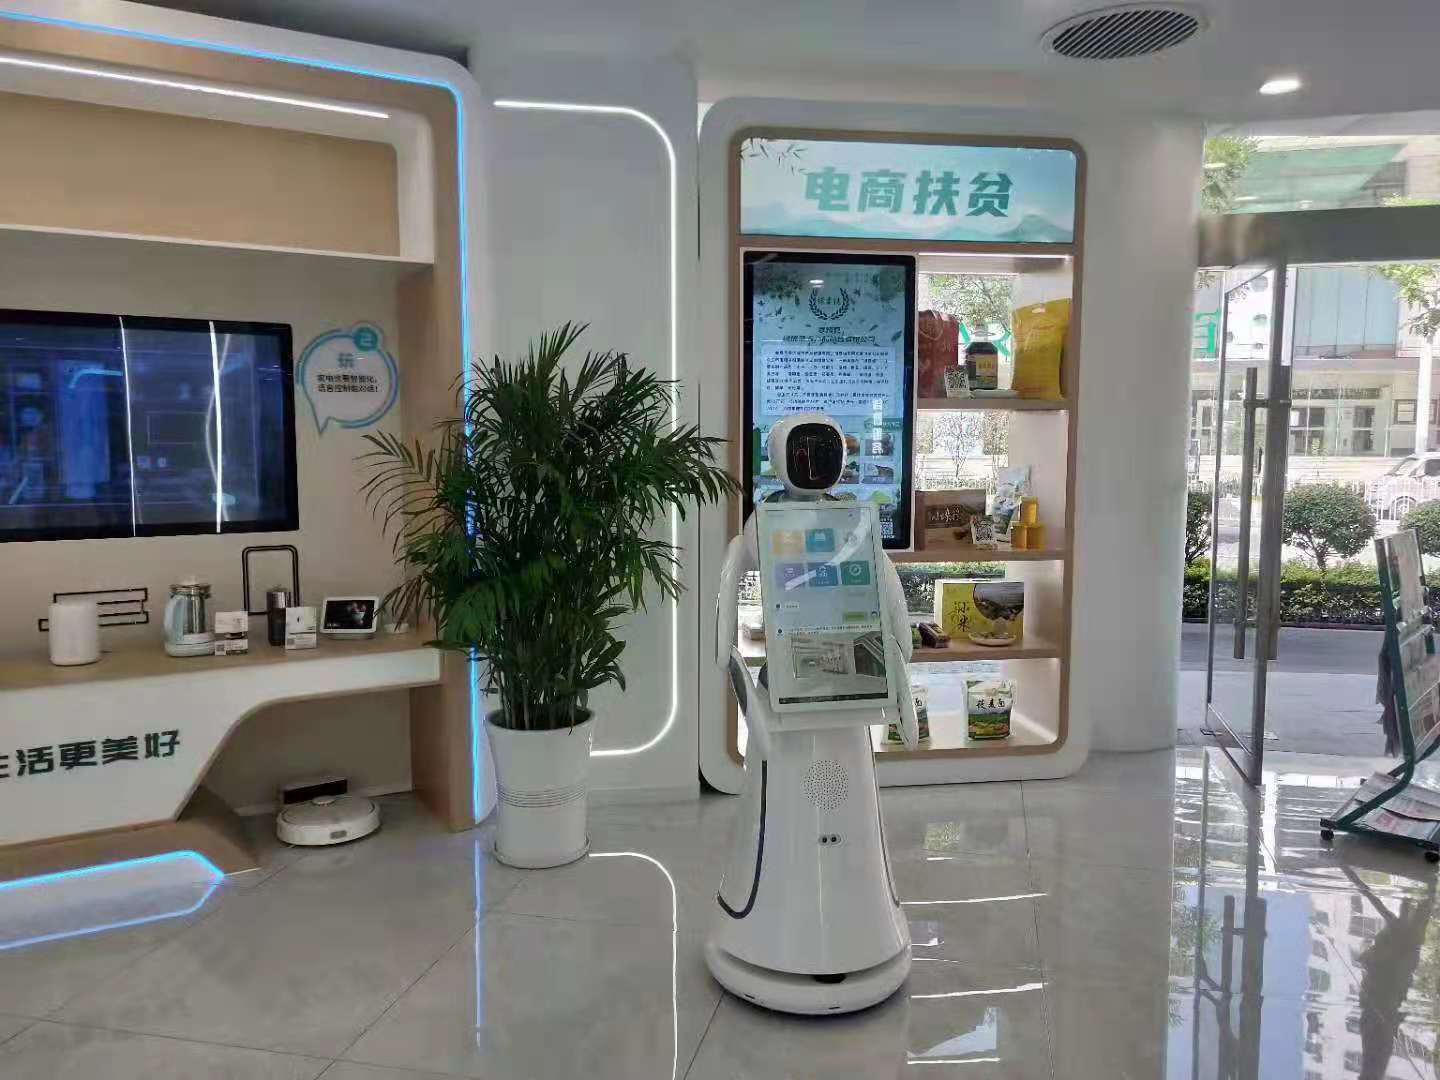 泉州展厅讲解机器人自主导览